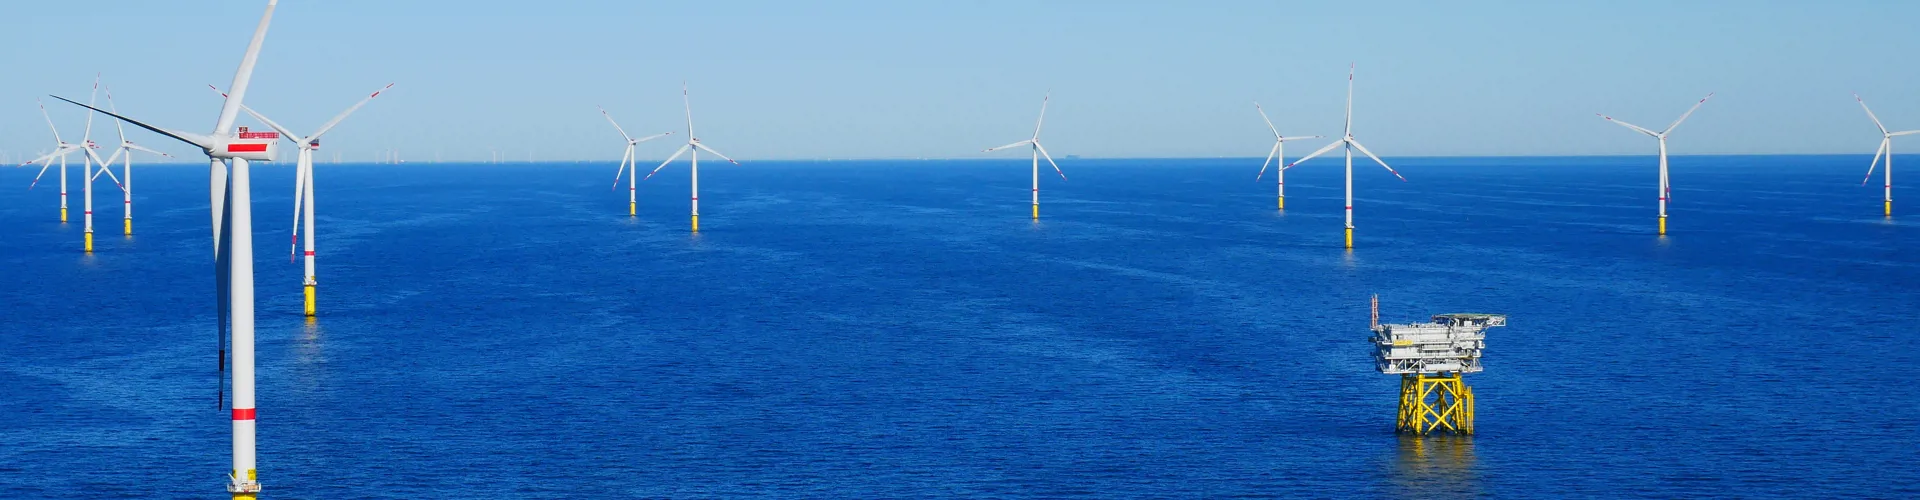 Wind turbine in sea